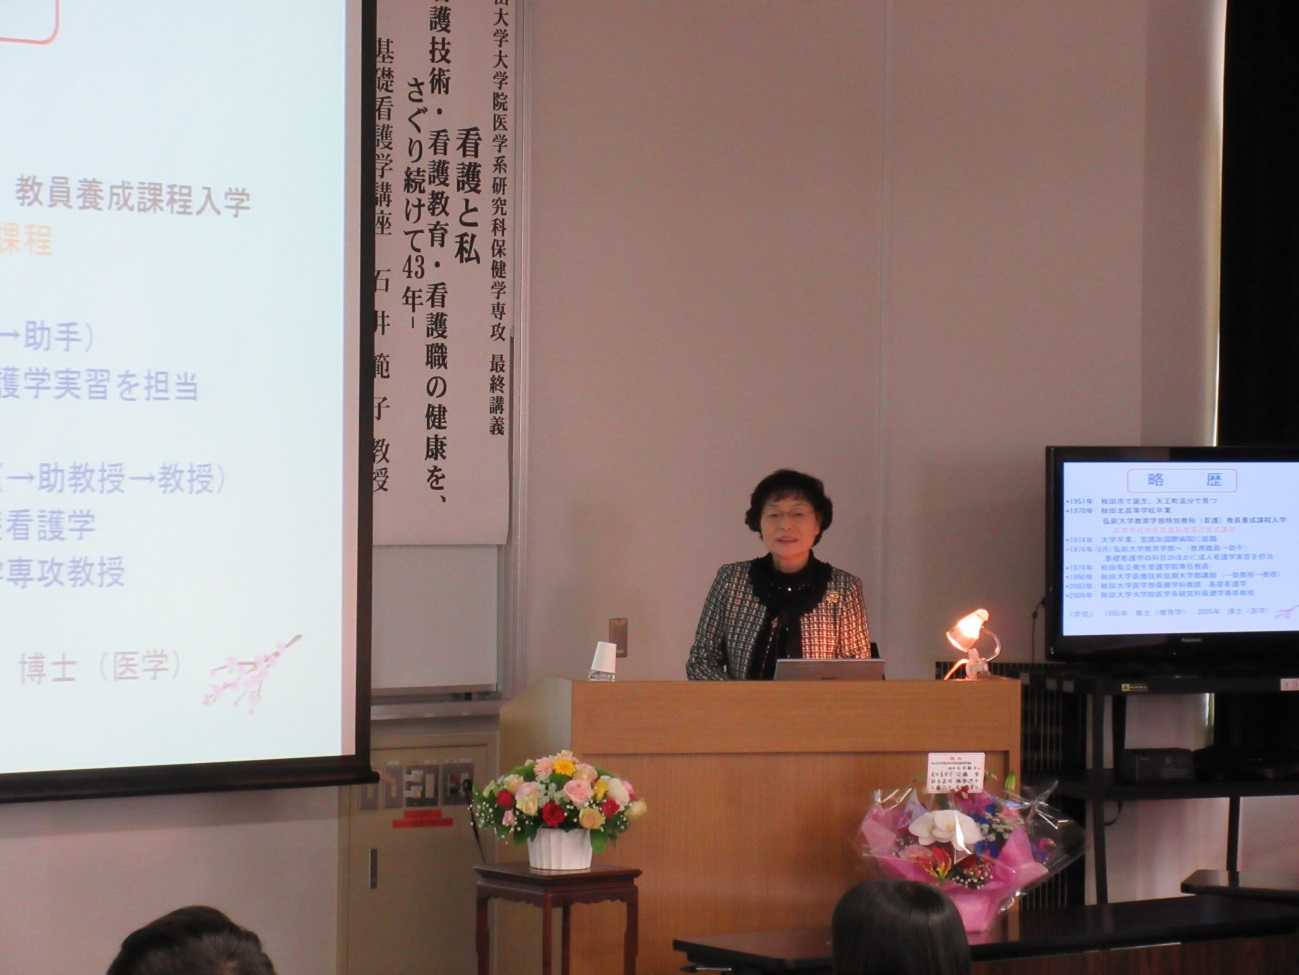 今年度で退職となる看護学専攻の石井範子教授の最終講義が行われました。